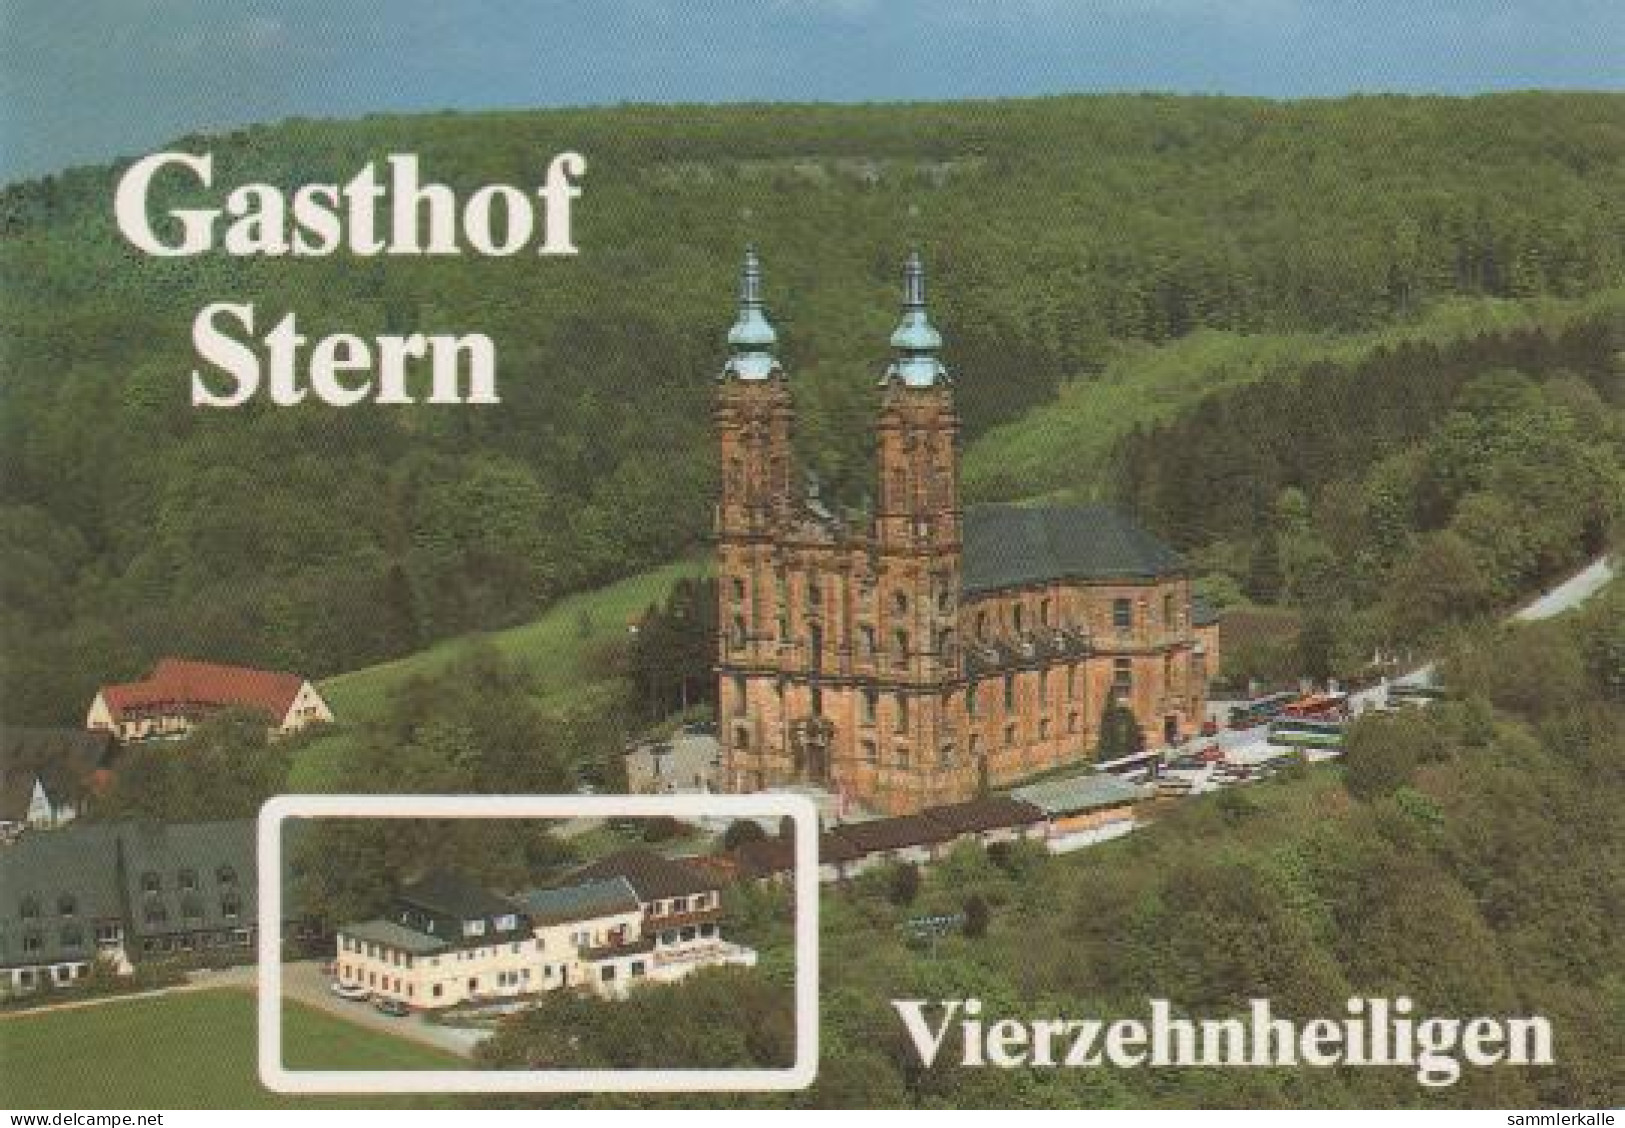 1018 - Bad Staffelstein - Gasthof Stern - Vierzehnheiligen - 1969 - Lichtenfels